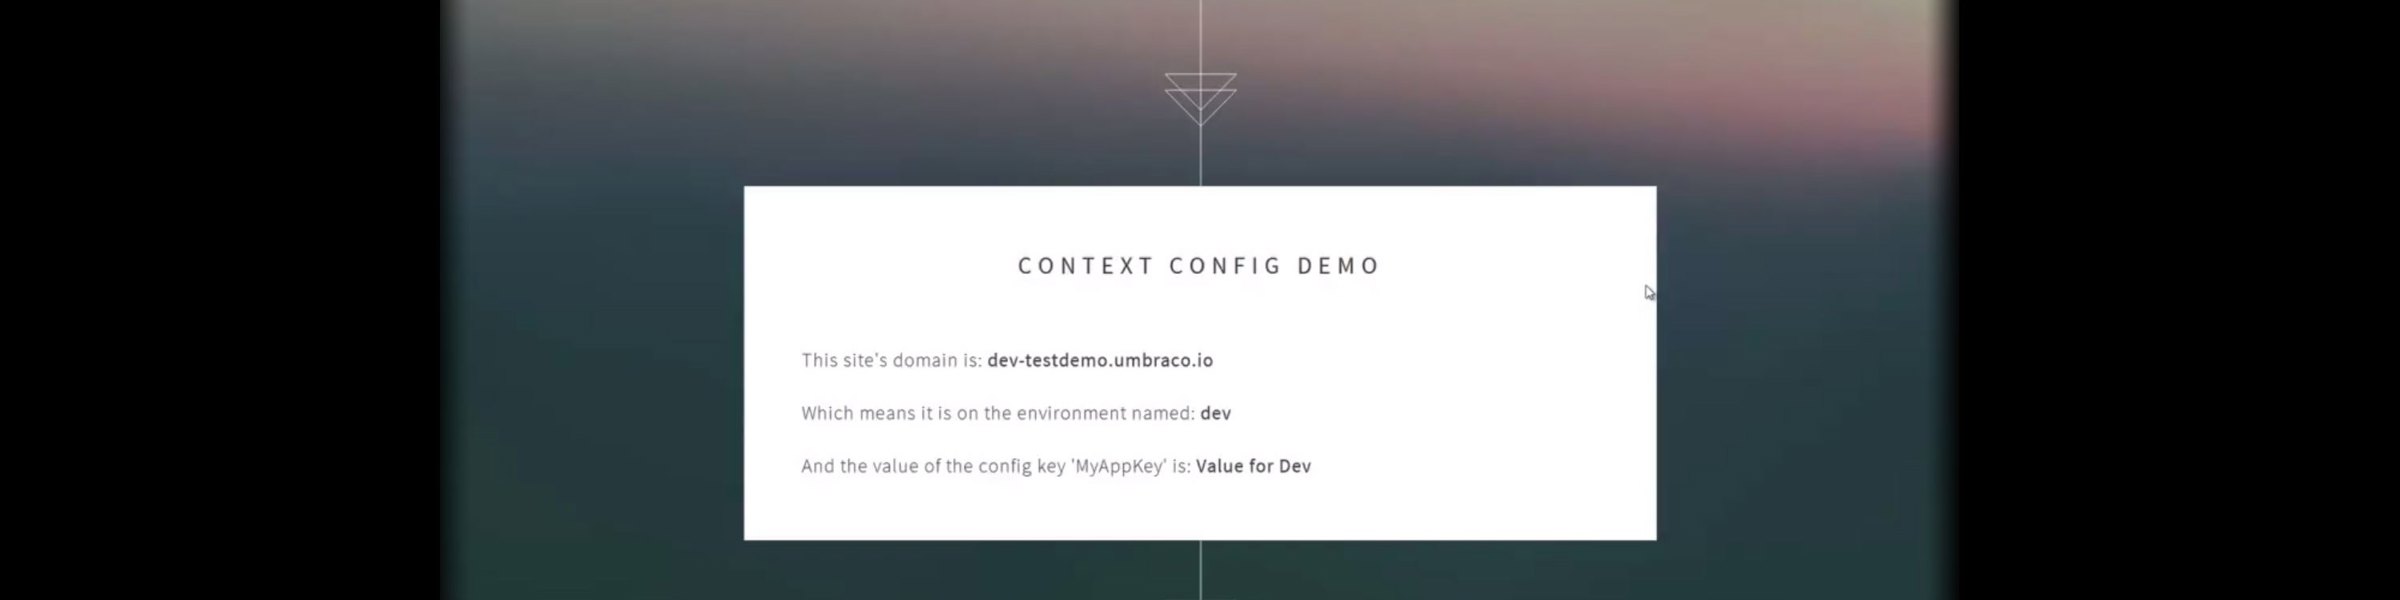 Context-Config-Demo.jpg